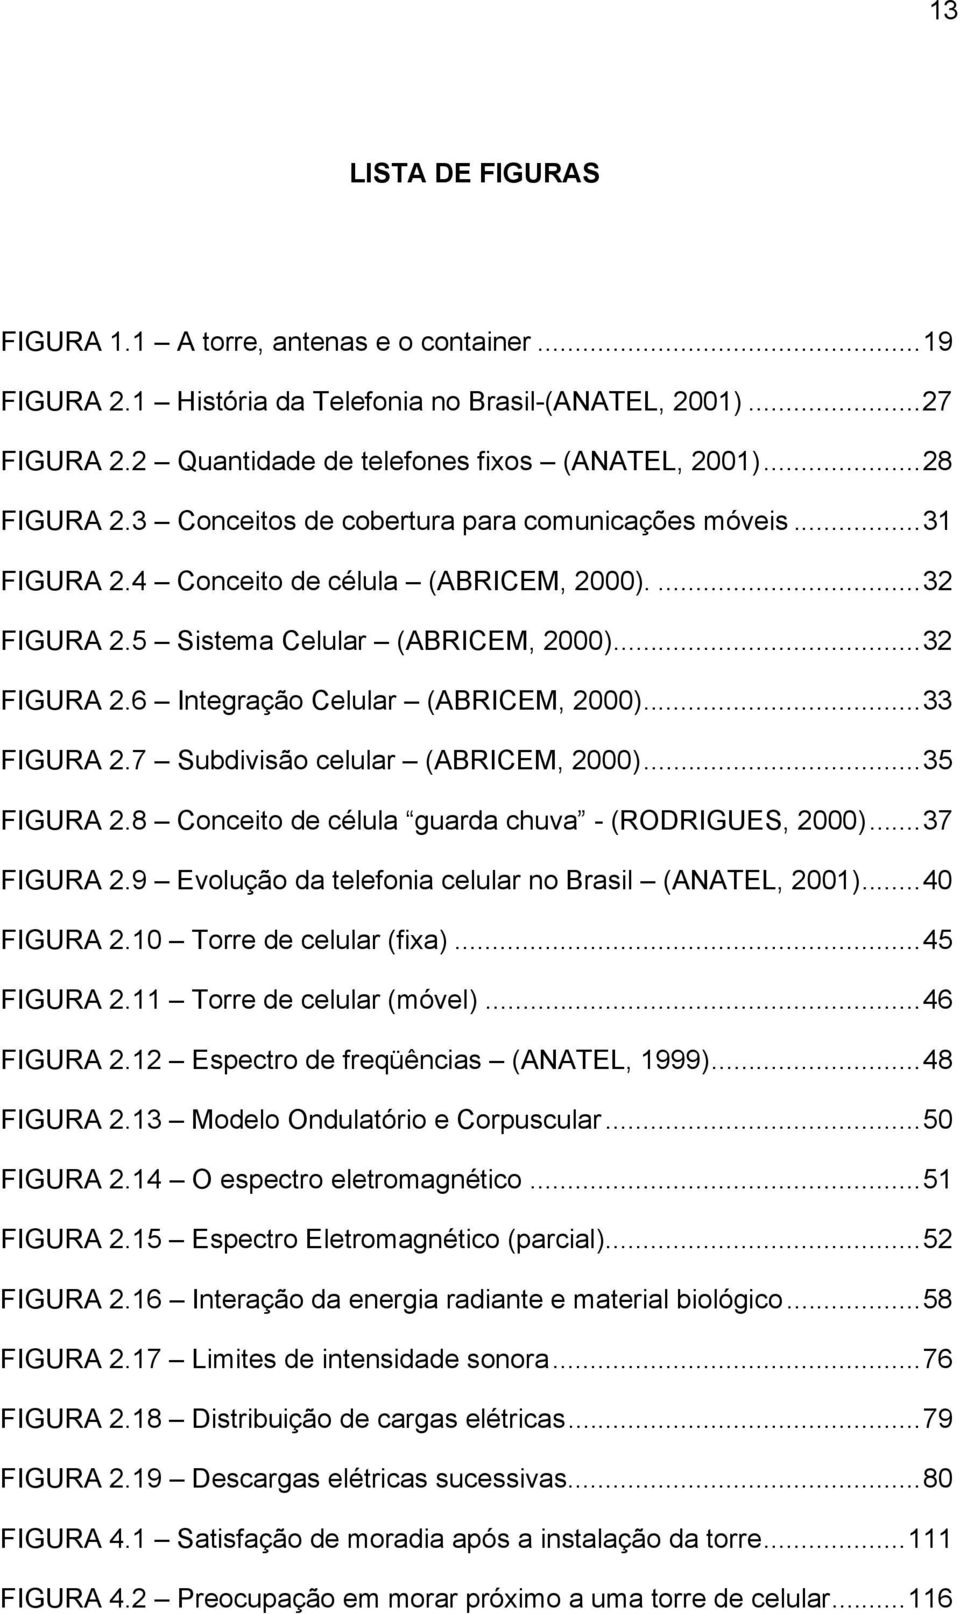 ..33 FIGURA 2.7 Subdivisão celular (ABRICEM, 2000)...35 FIGURA 2.8 Conceito de célula guarda chuva - (RODRIGUES, 2000)...37 FIGURA 2.9 Evolução da telefonia celular no Brasil (ANATEL, 2001).